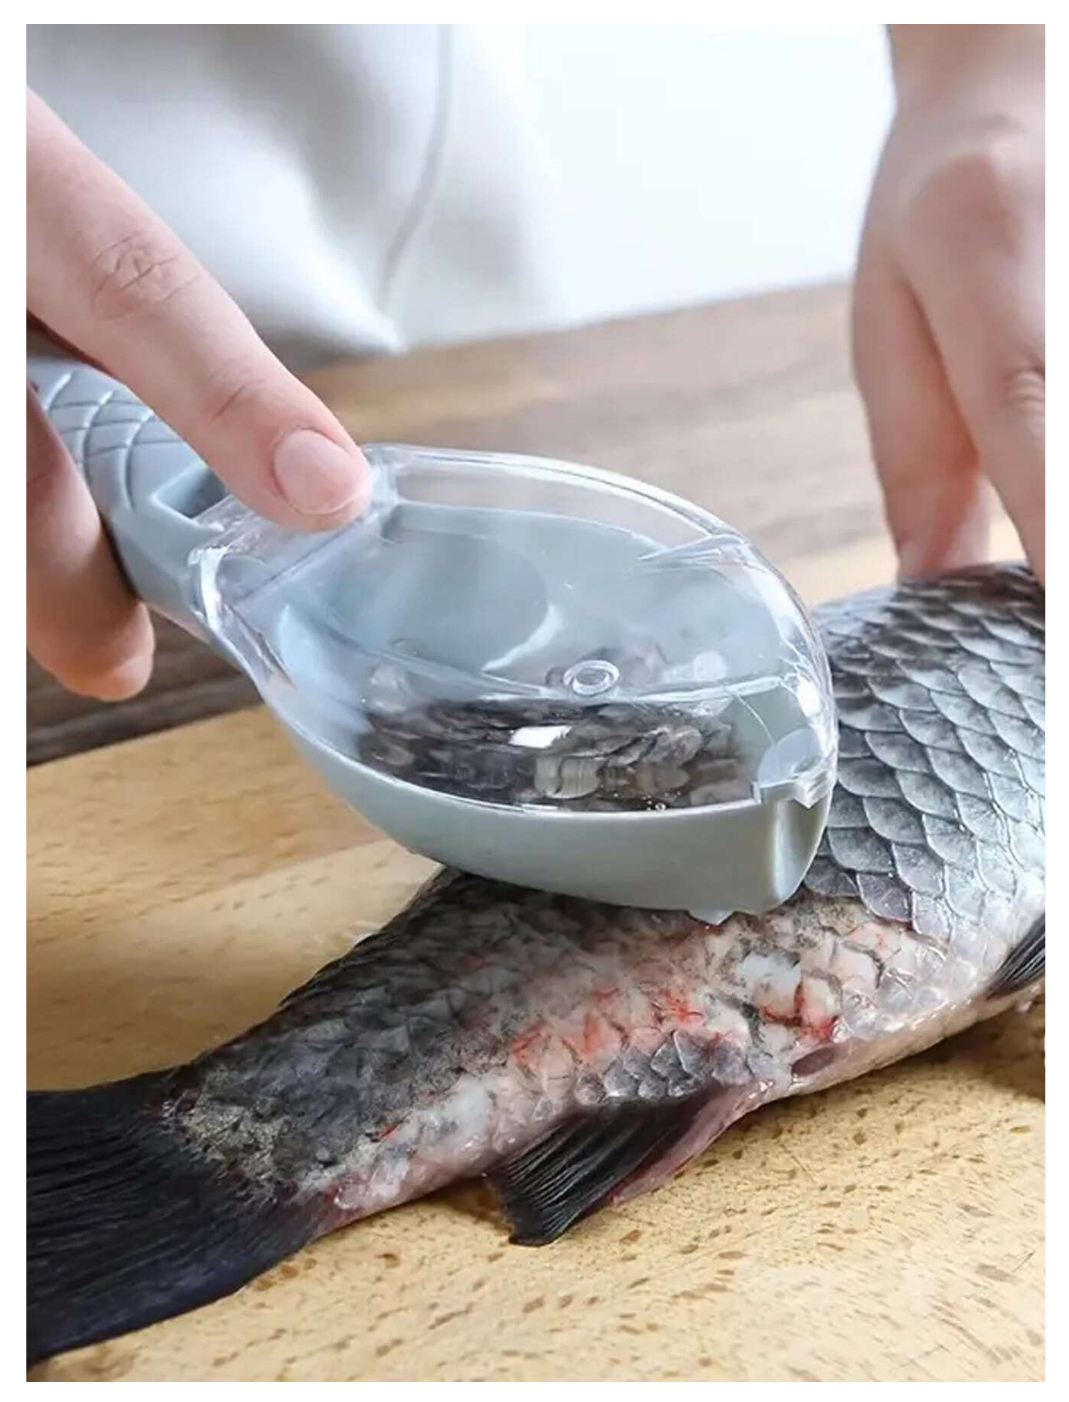 Fin-tastic Kitchen Companion: 1pc Manual Fish Scale Scraper – Swiftly Remove Fish Scales with Ease!